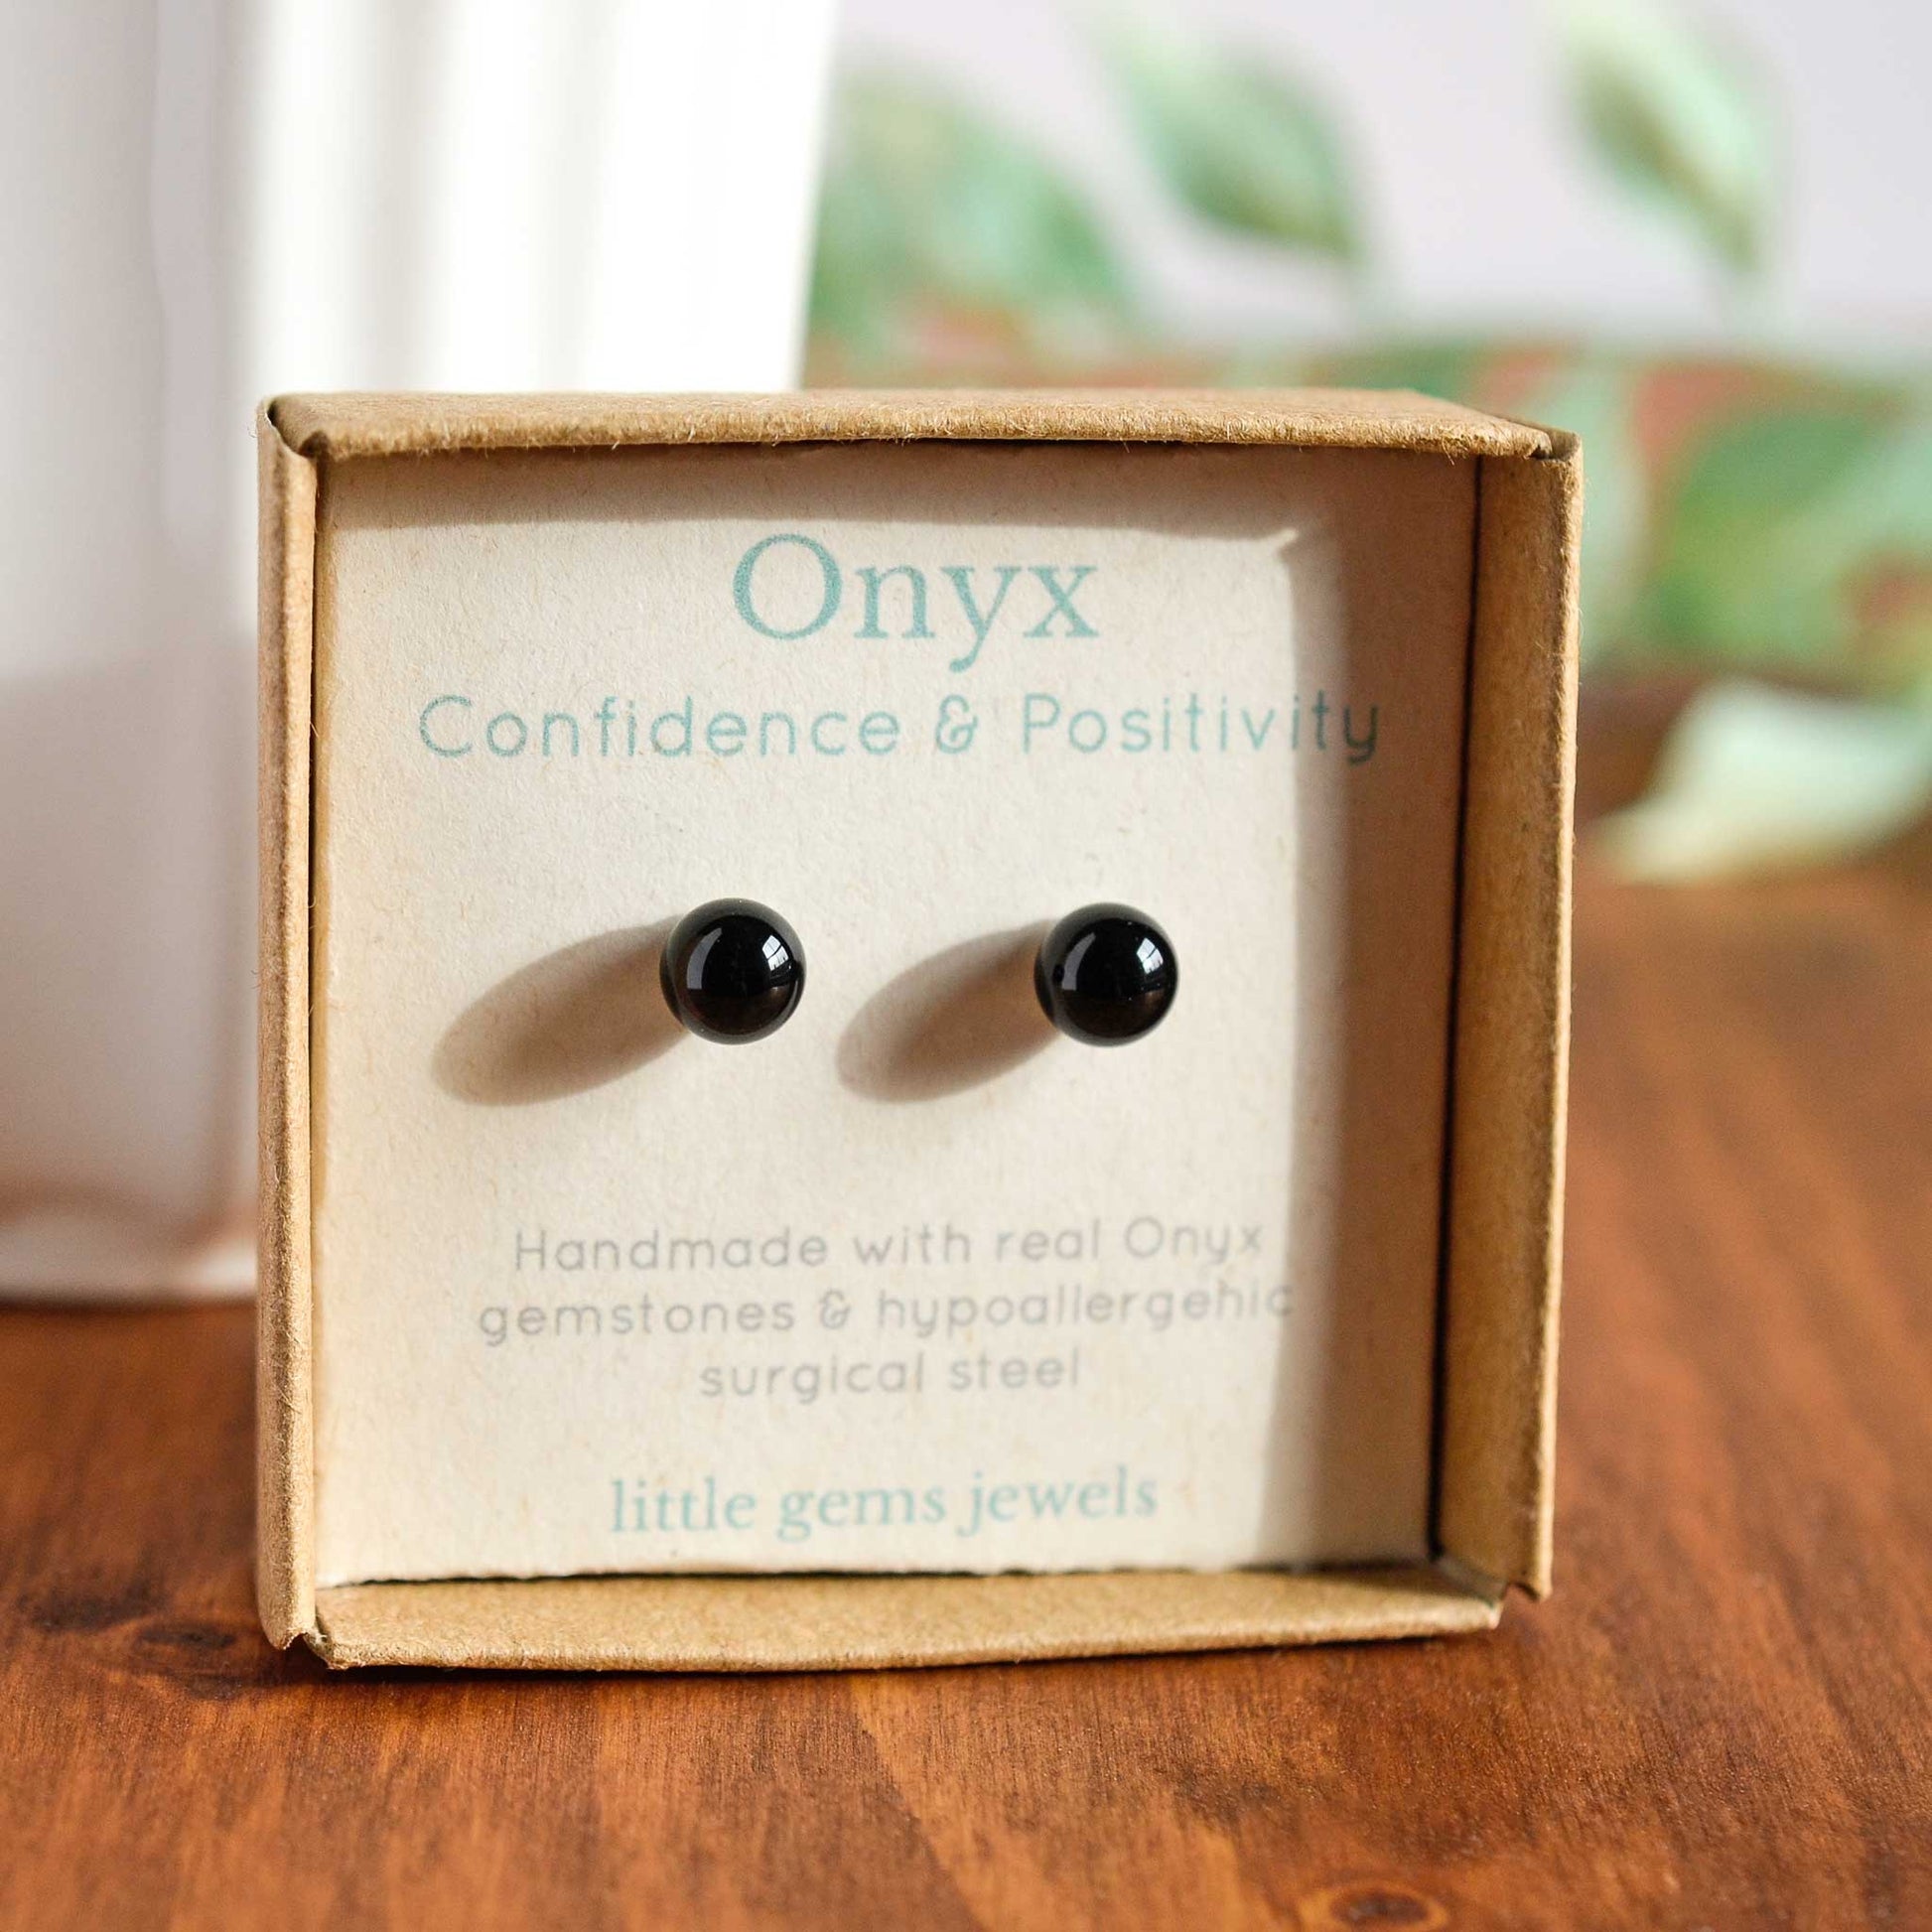 Onyx ball stud earrings in eco friendly gift box